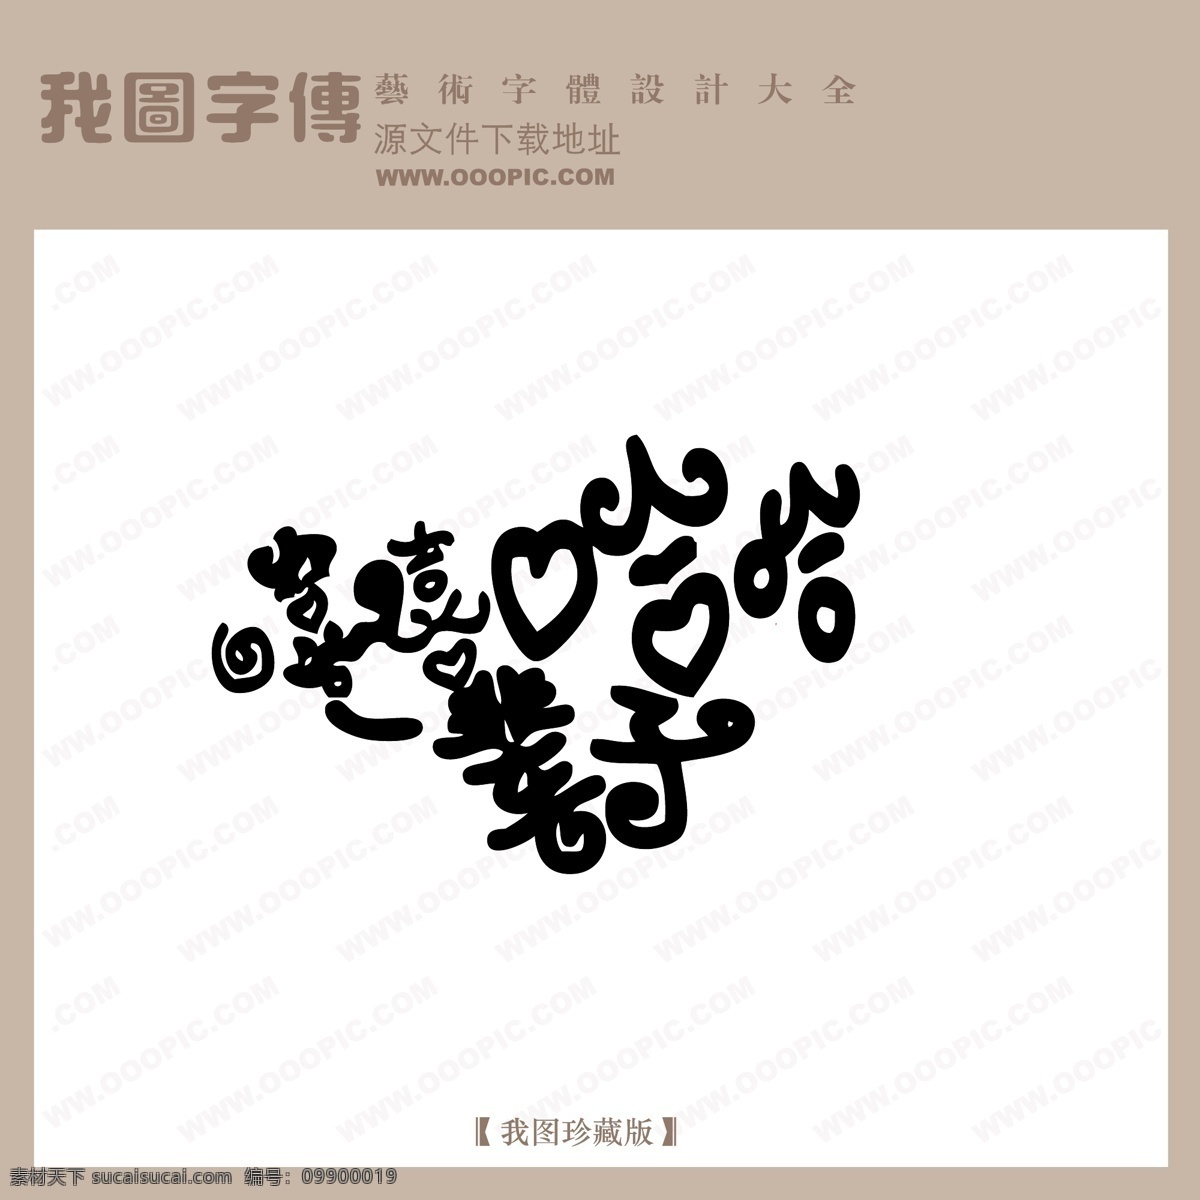 嘻嘻哈哈 一辈子 中文 现代艺术 字 创意 美工 艺术 中国字体下载 矢量图